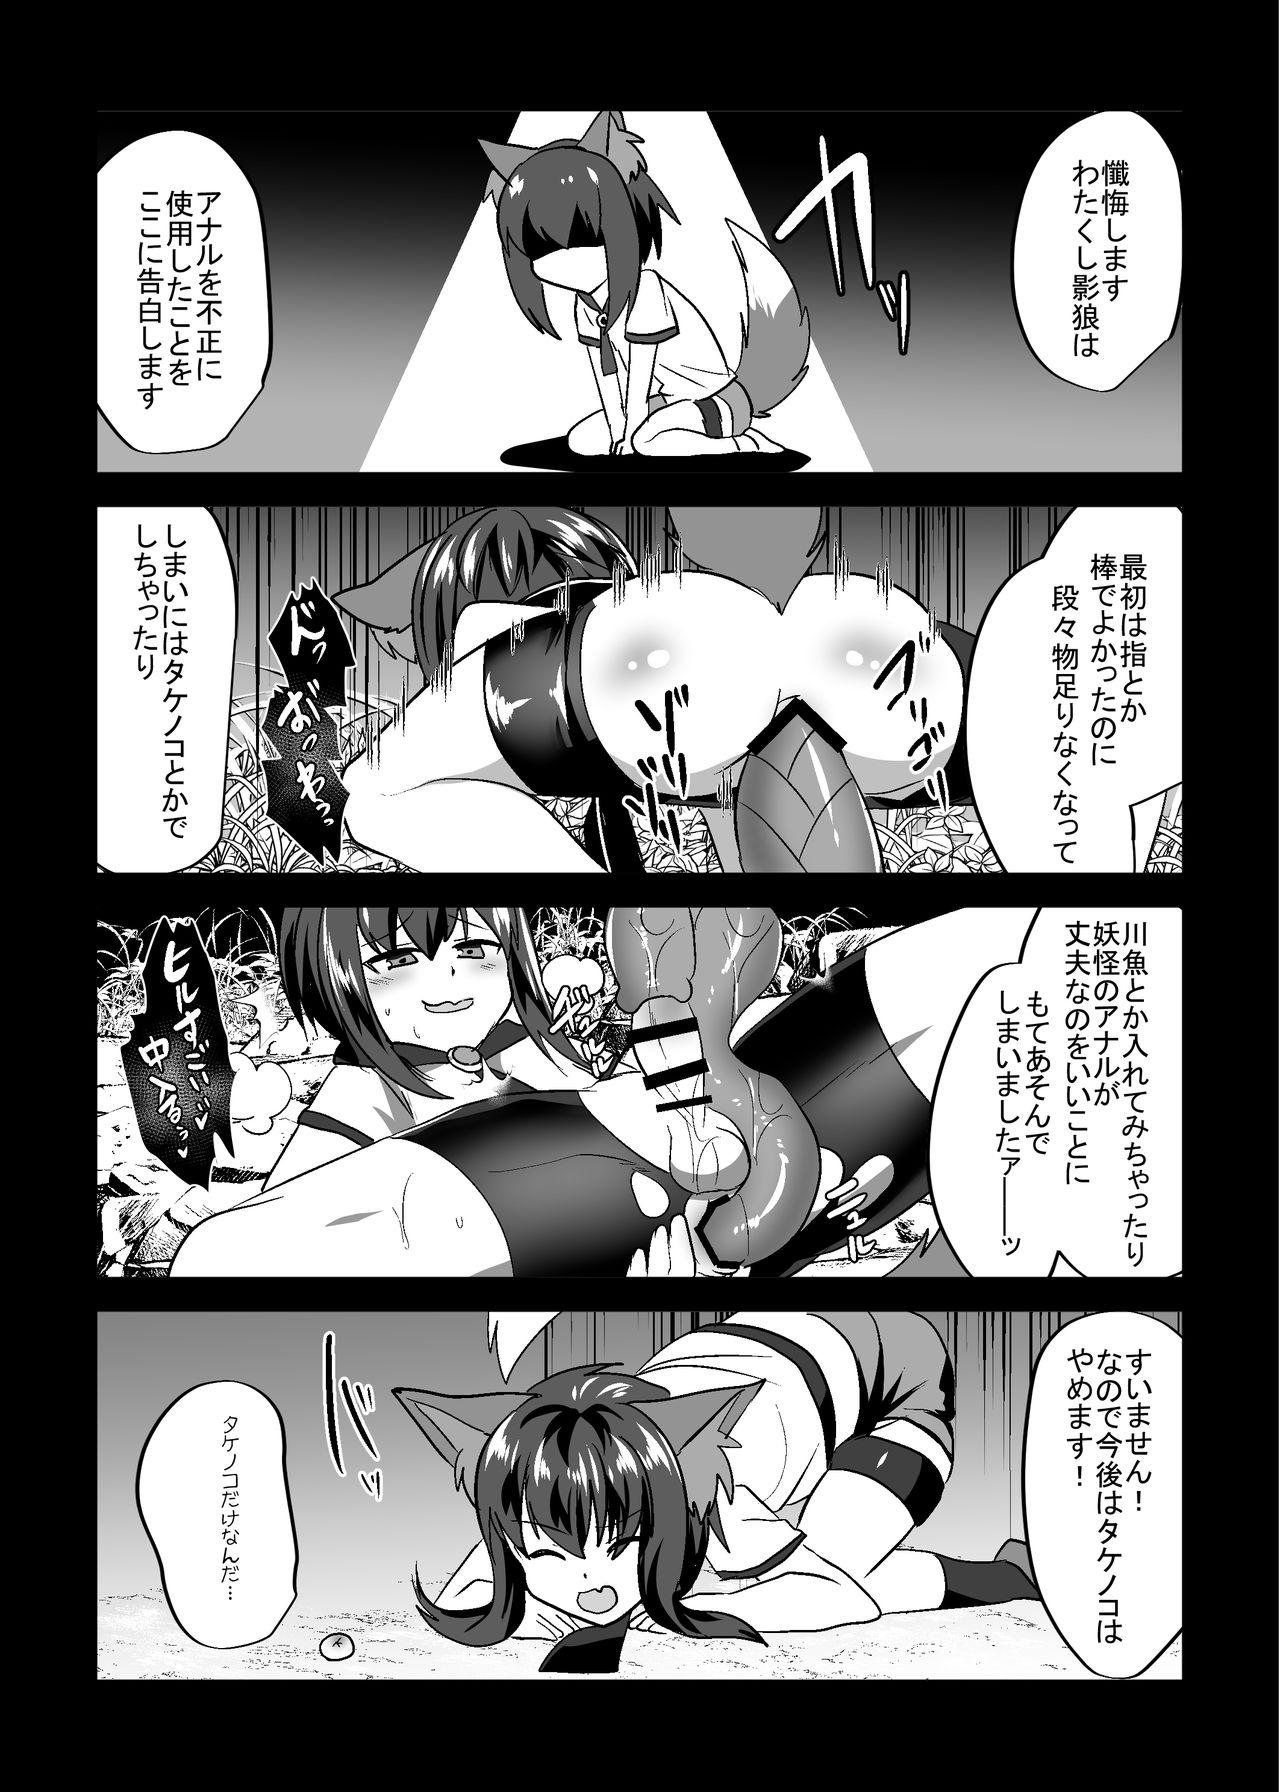 Naked Sex Uchi no * ga iede shimashite - Touhou project Virginity - Page 13